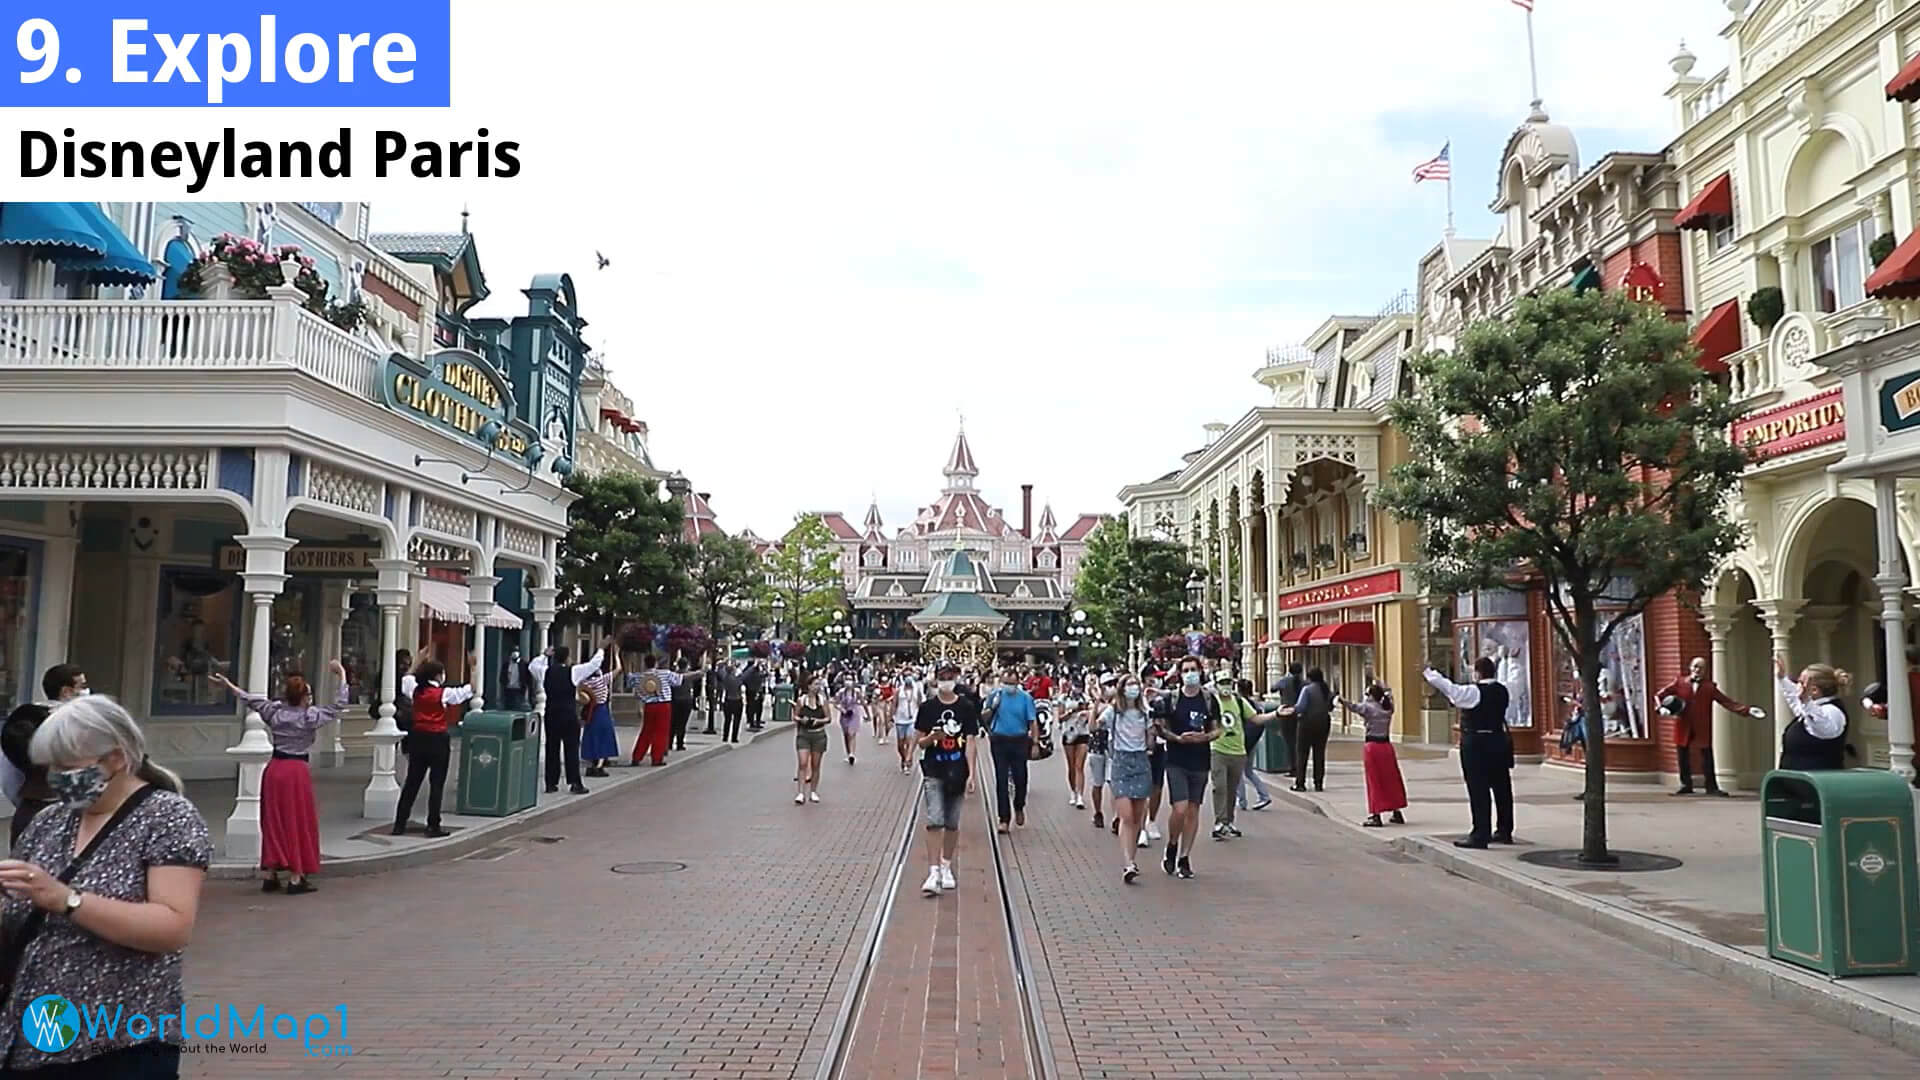 Disneyland Paris in Paris